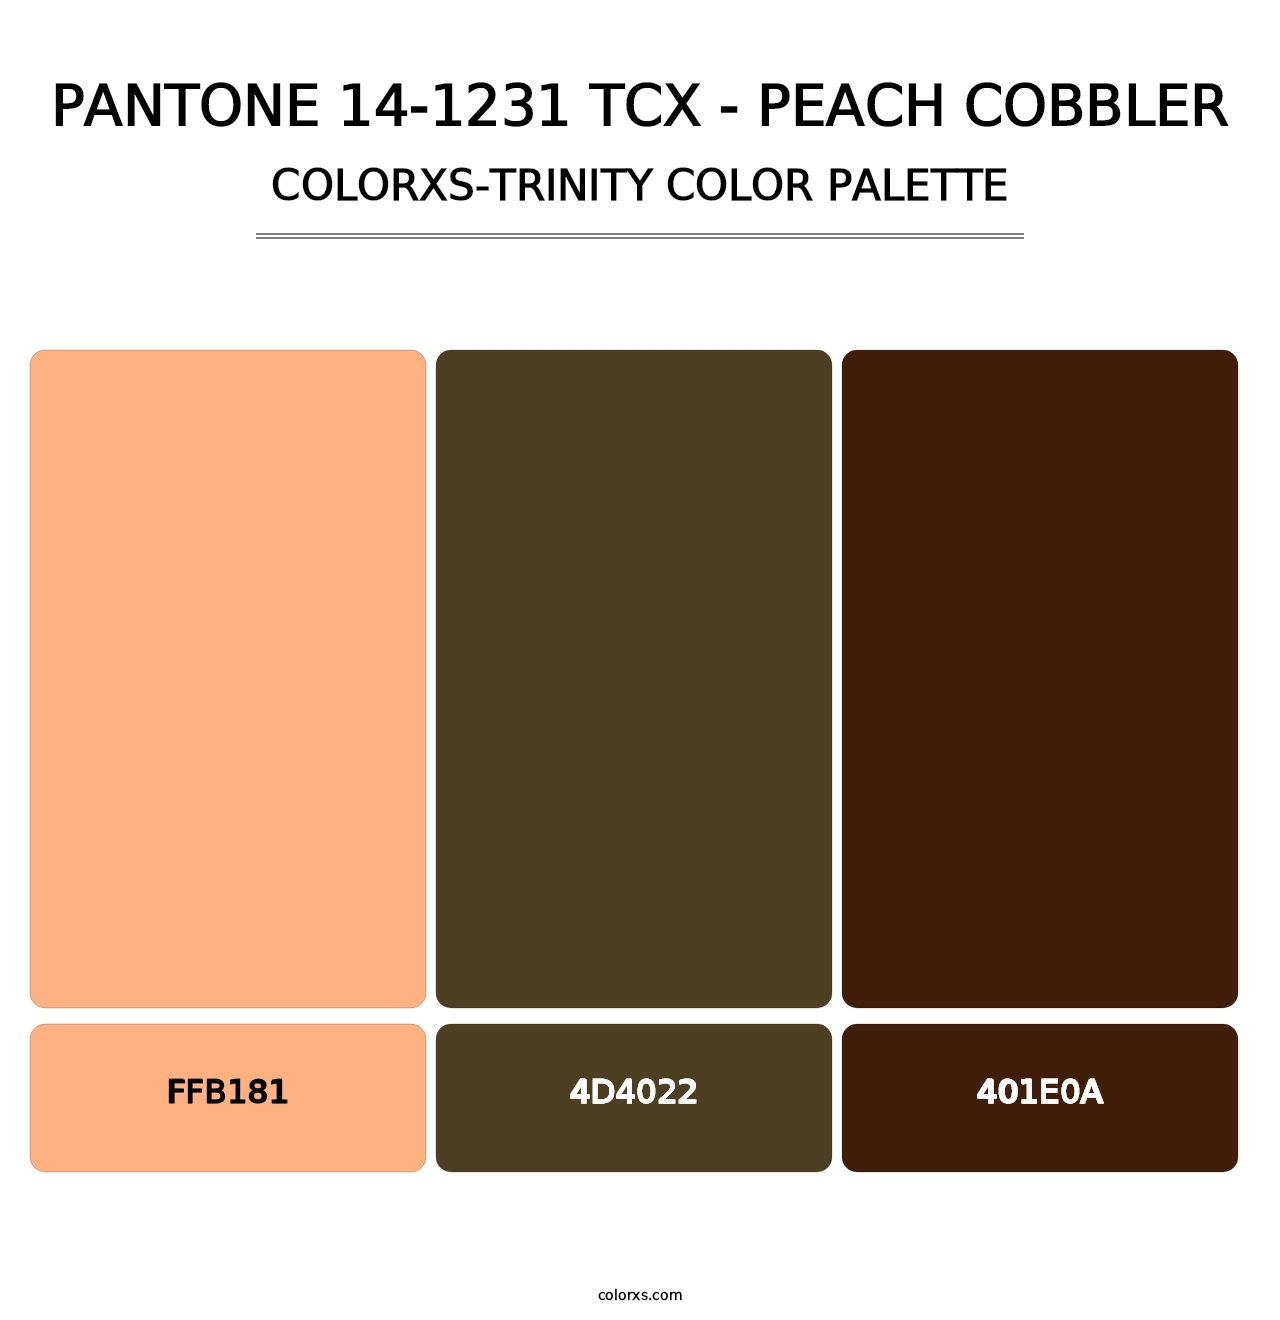 PANTONE 14-1231 TCX - Peach Cobbler - Colorxs Trinity Palette